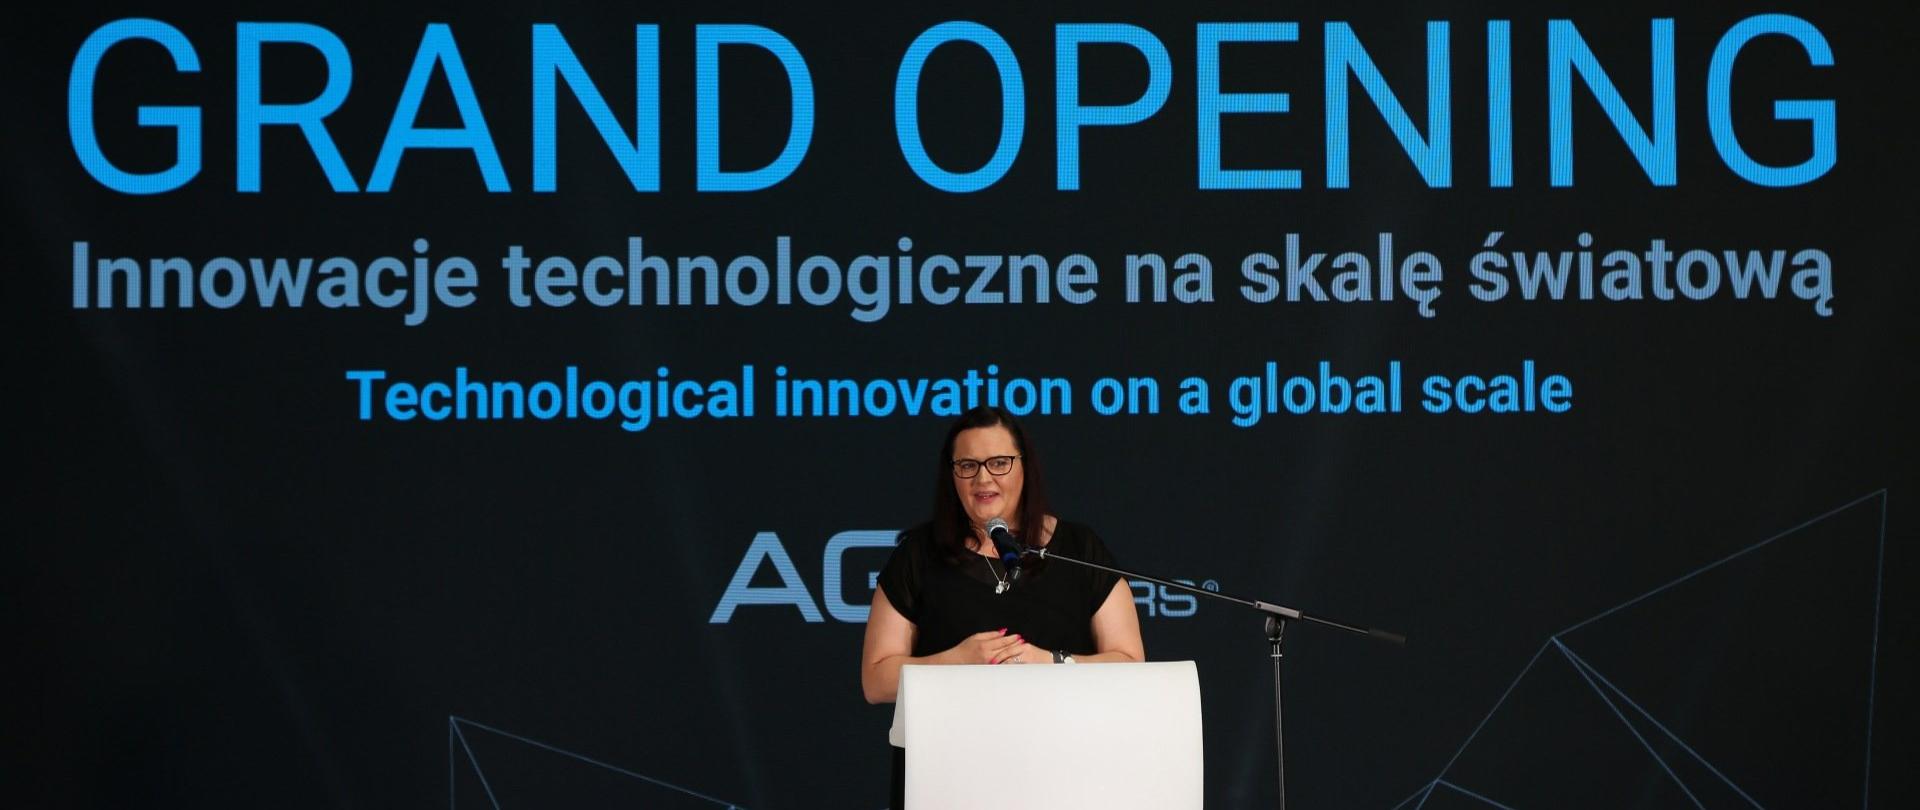 Wiceminister Małgorzata Jarosińska-Jedynak stoi w białej mównicy i przemawia do mikrofonu. Za nią na ekranie na czarnym tle wyświetla się napis: GRAND OPENING Innowacje technologiczne na skalę światową"